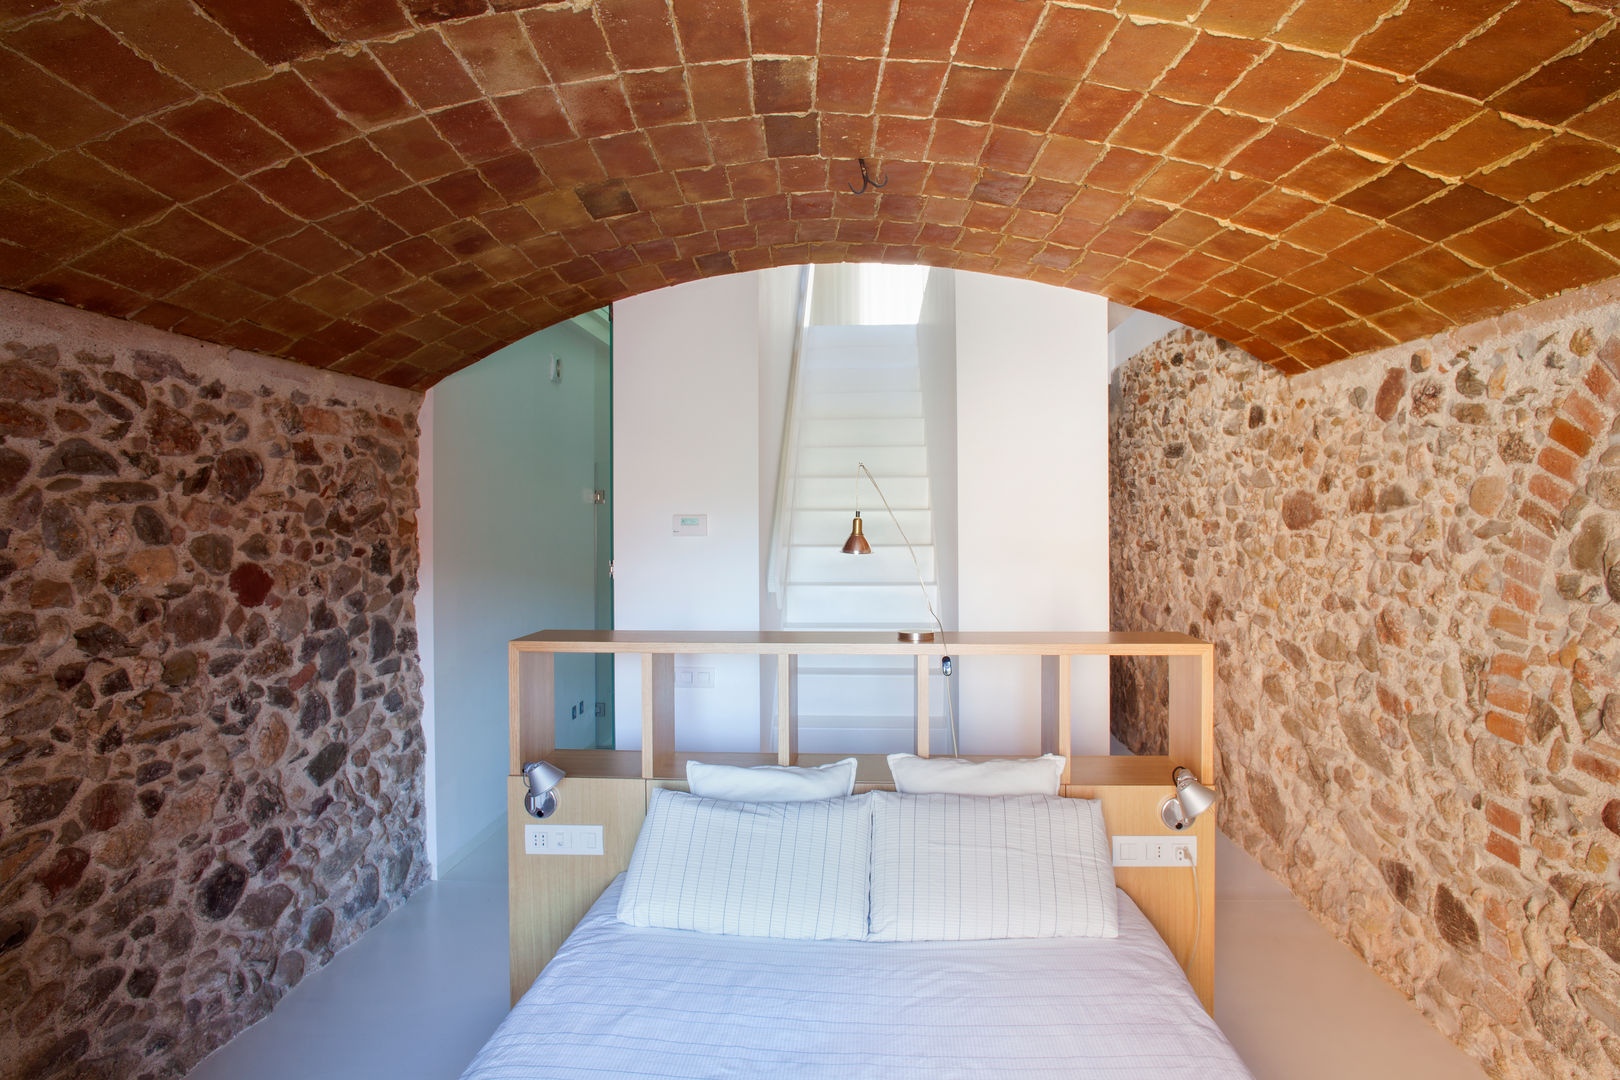 Dormitorio CABRÉ I DÍAZ ARQUITECTES Dormitorios de estilo minimalista